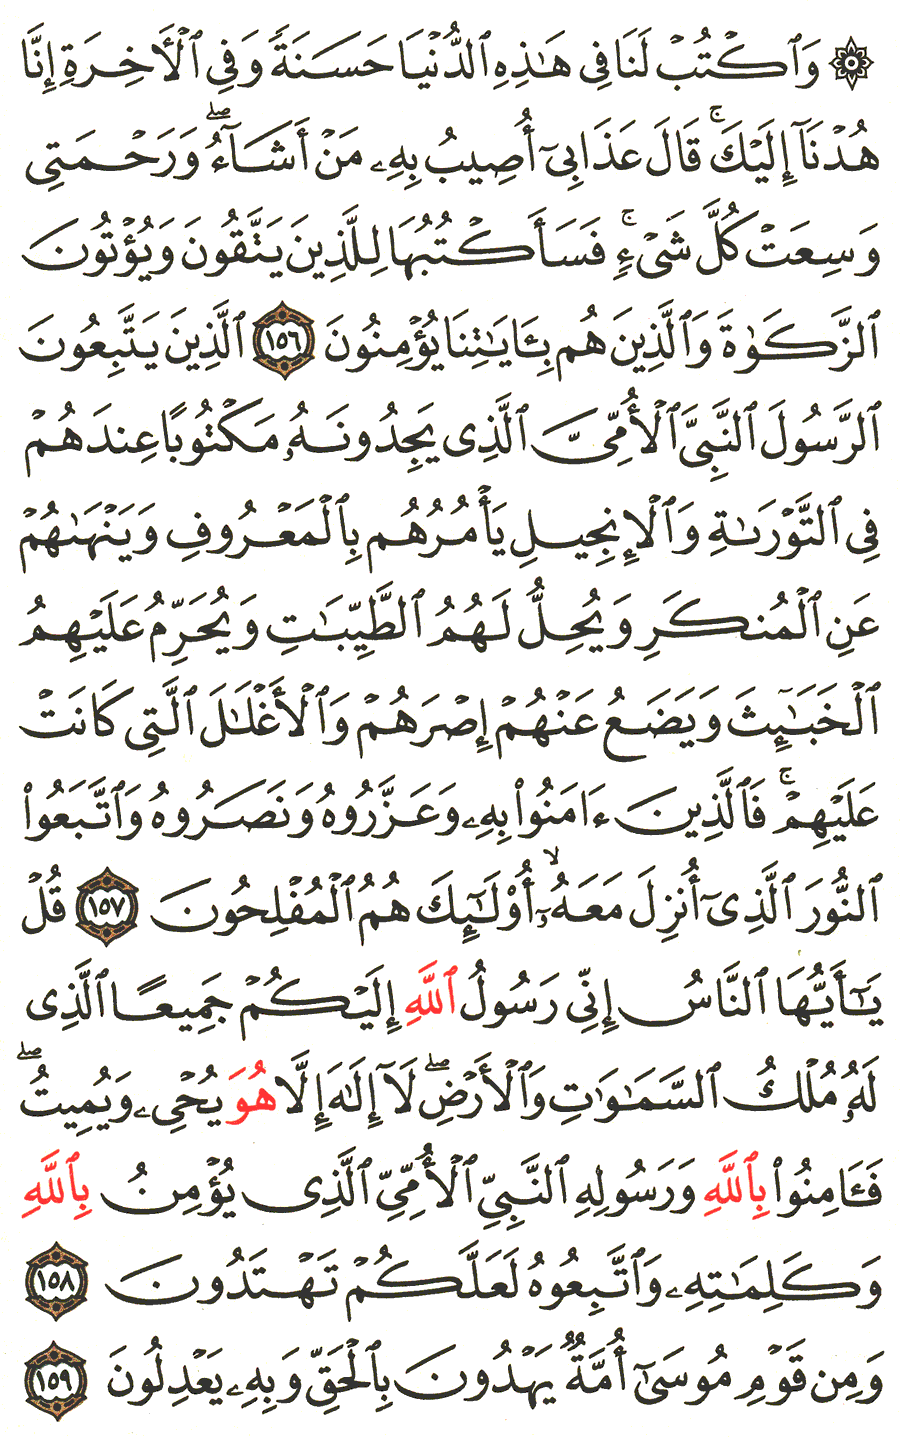 الصفحة 170 من القرآن الكريم